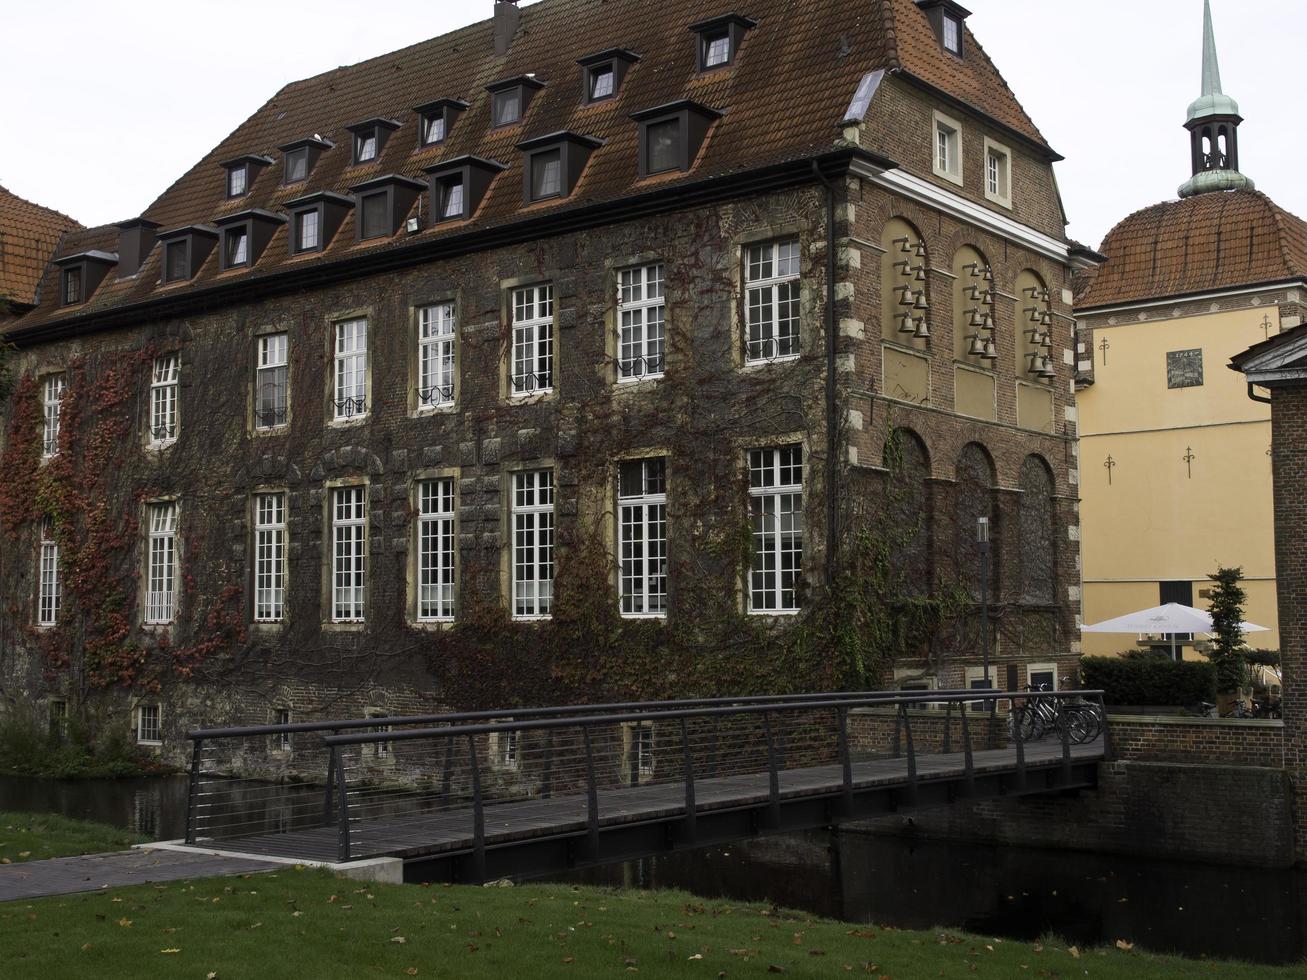 velen,germania,2020-il castello di Velen nel Germania foto